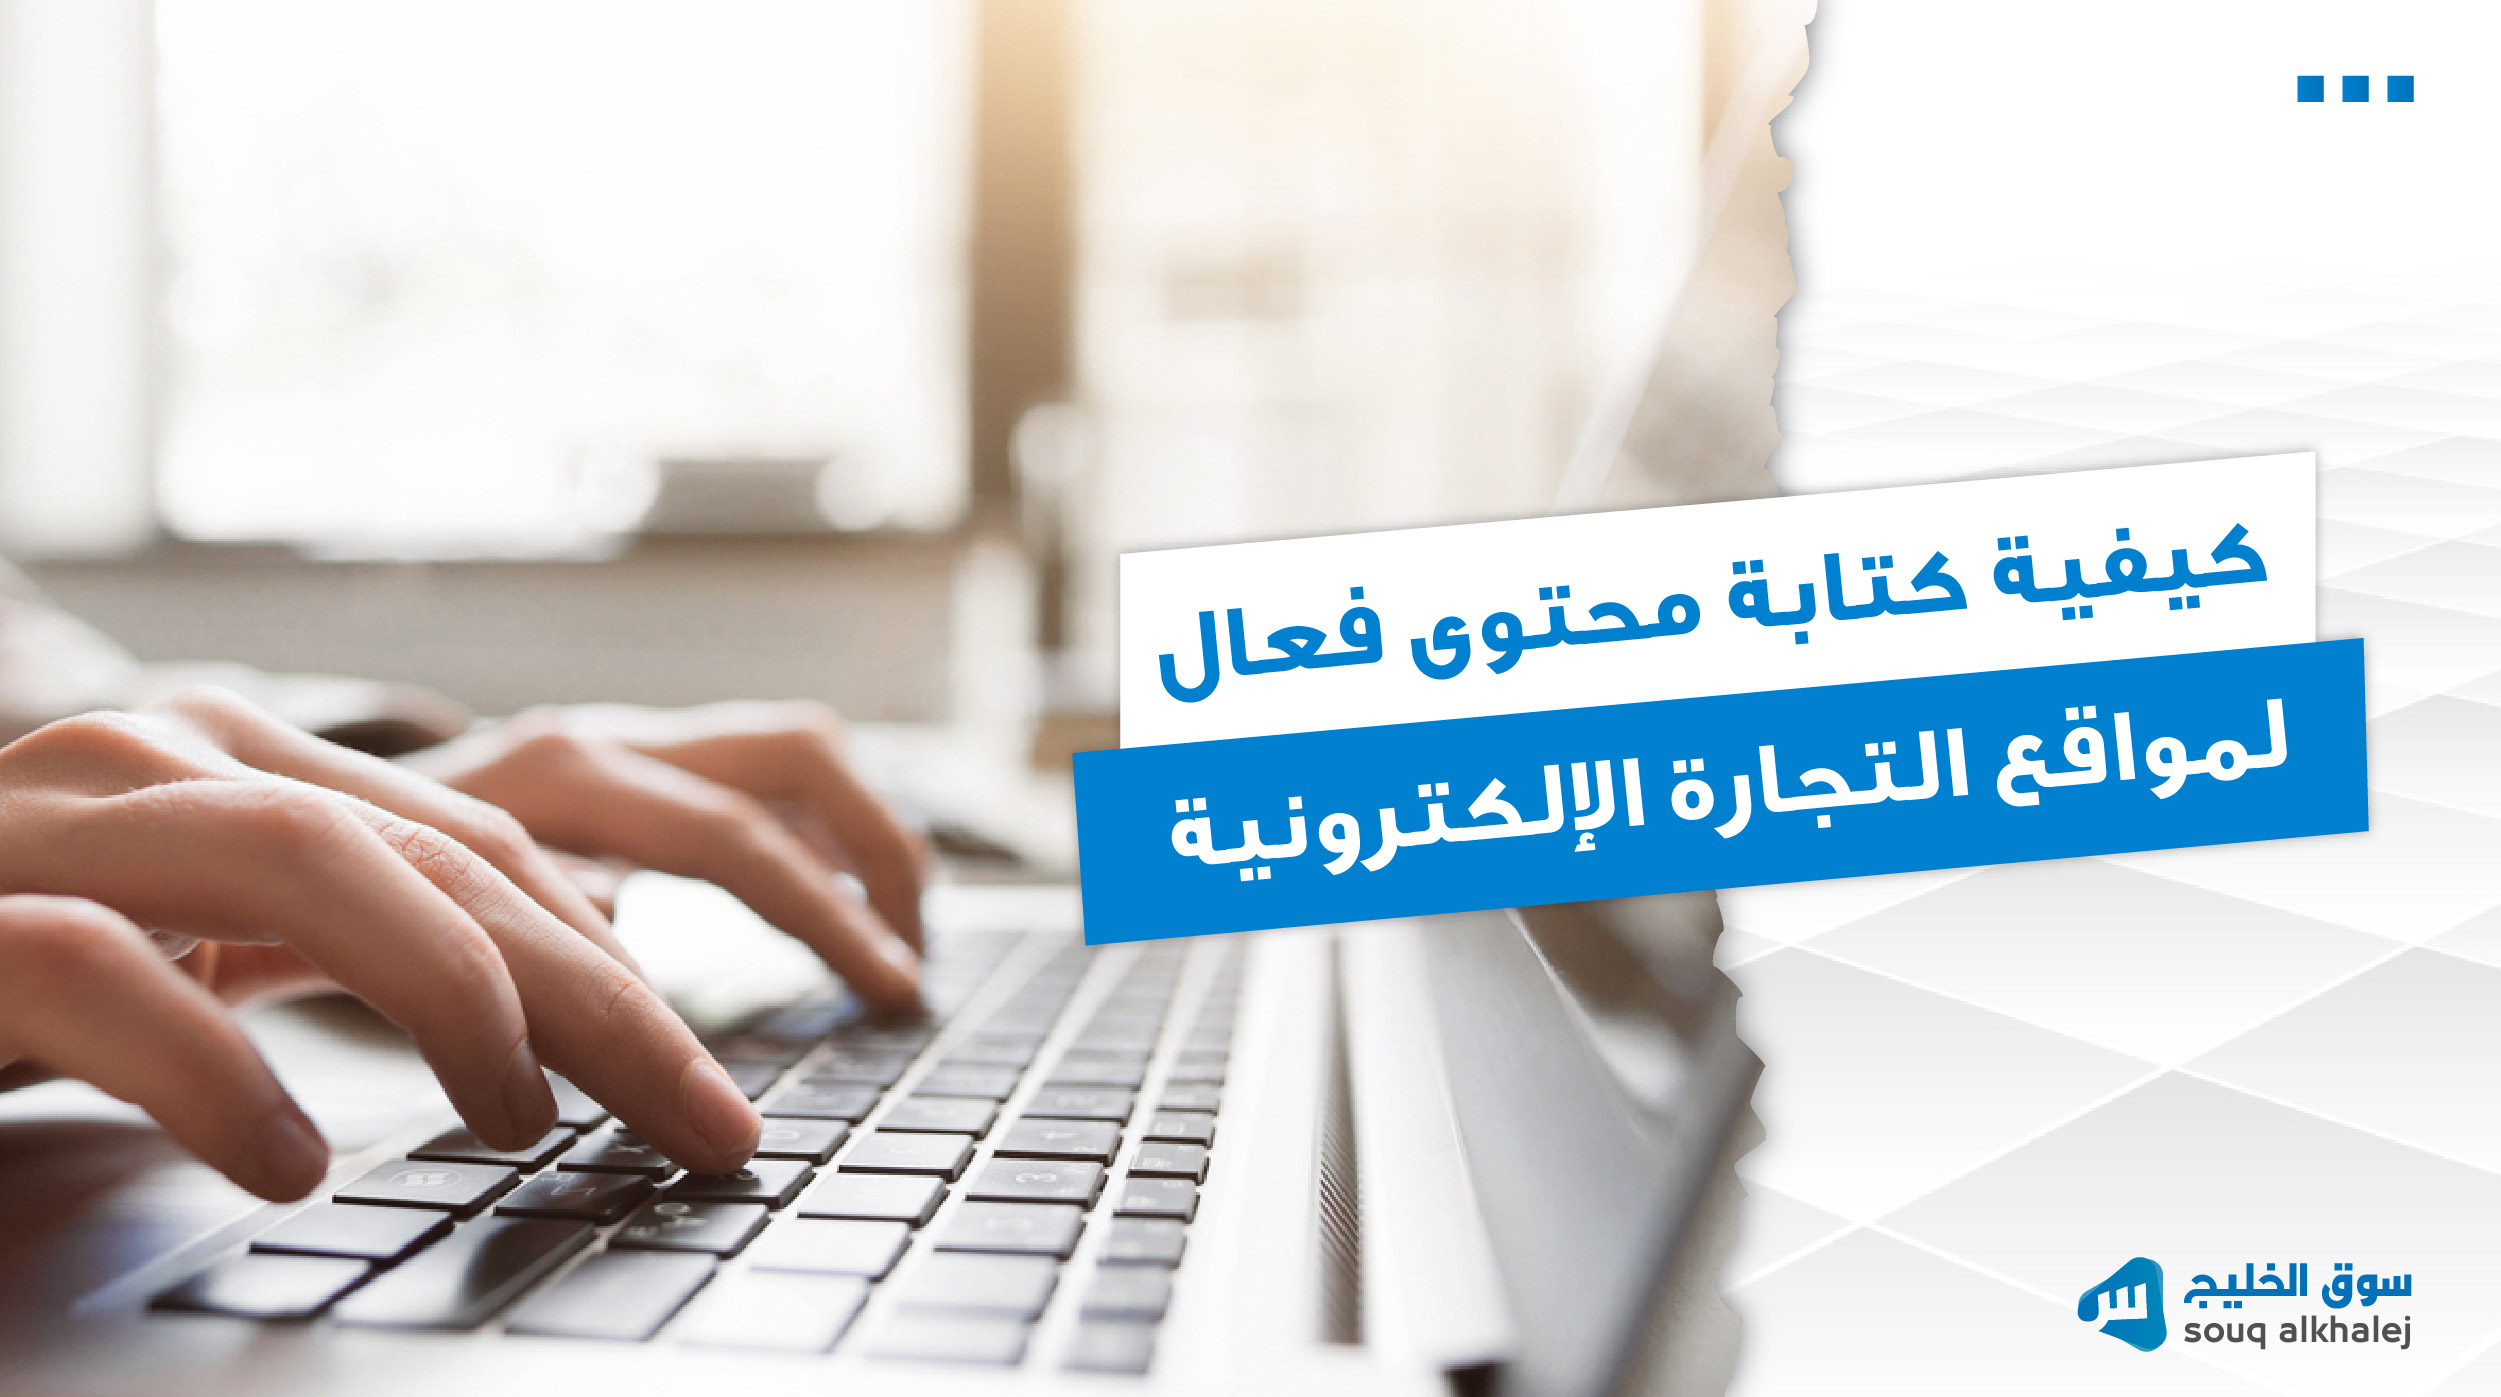 كيفية كتابة المحتوى فعال لمواقع التجارة الإلكترونية - سوق الخليج